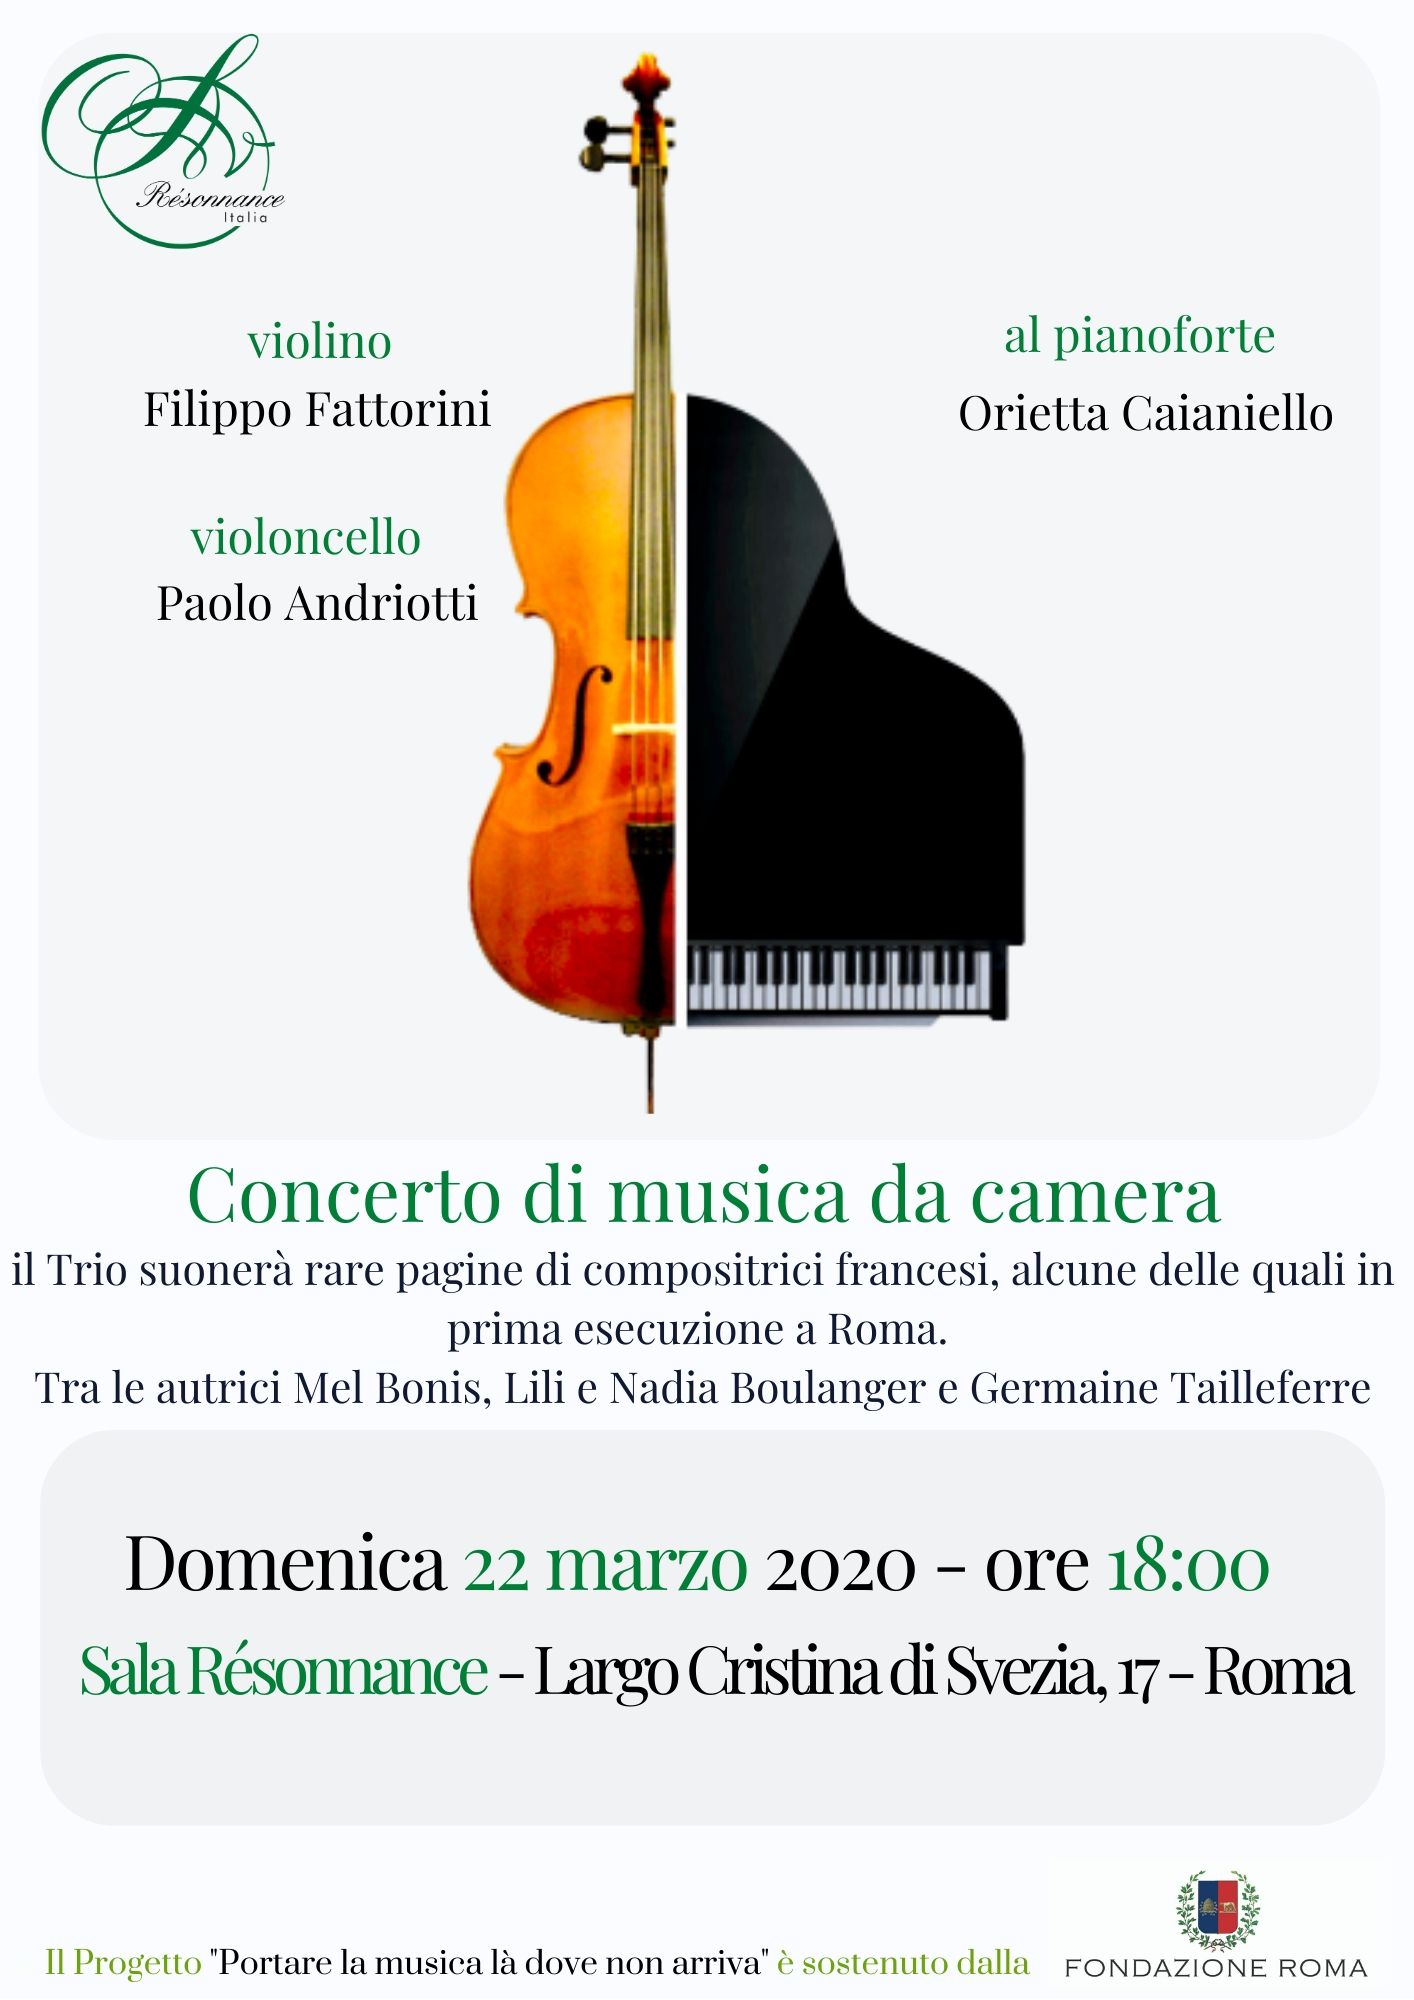 Concerto di musica classica con Orietta Caianiello, Filippo Fattorini e Paolo Andriotti